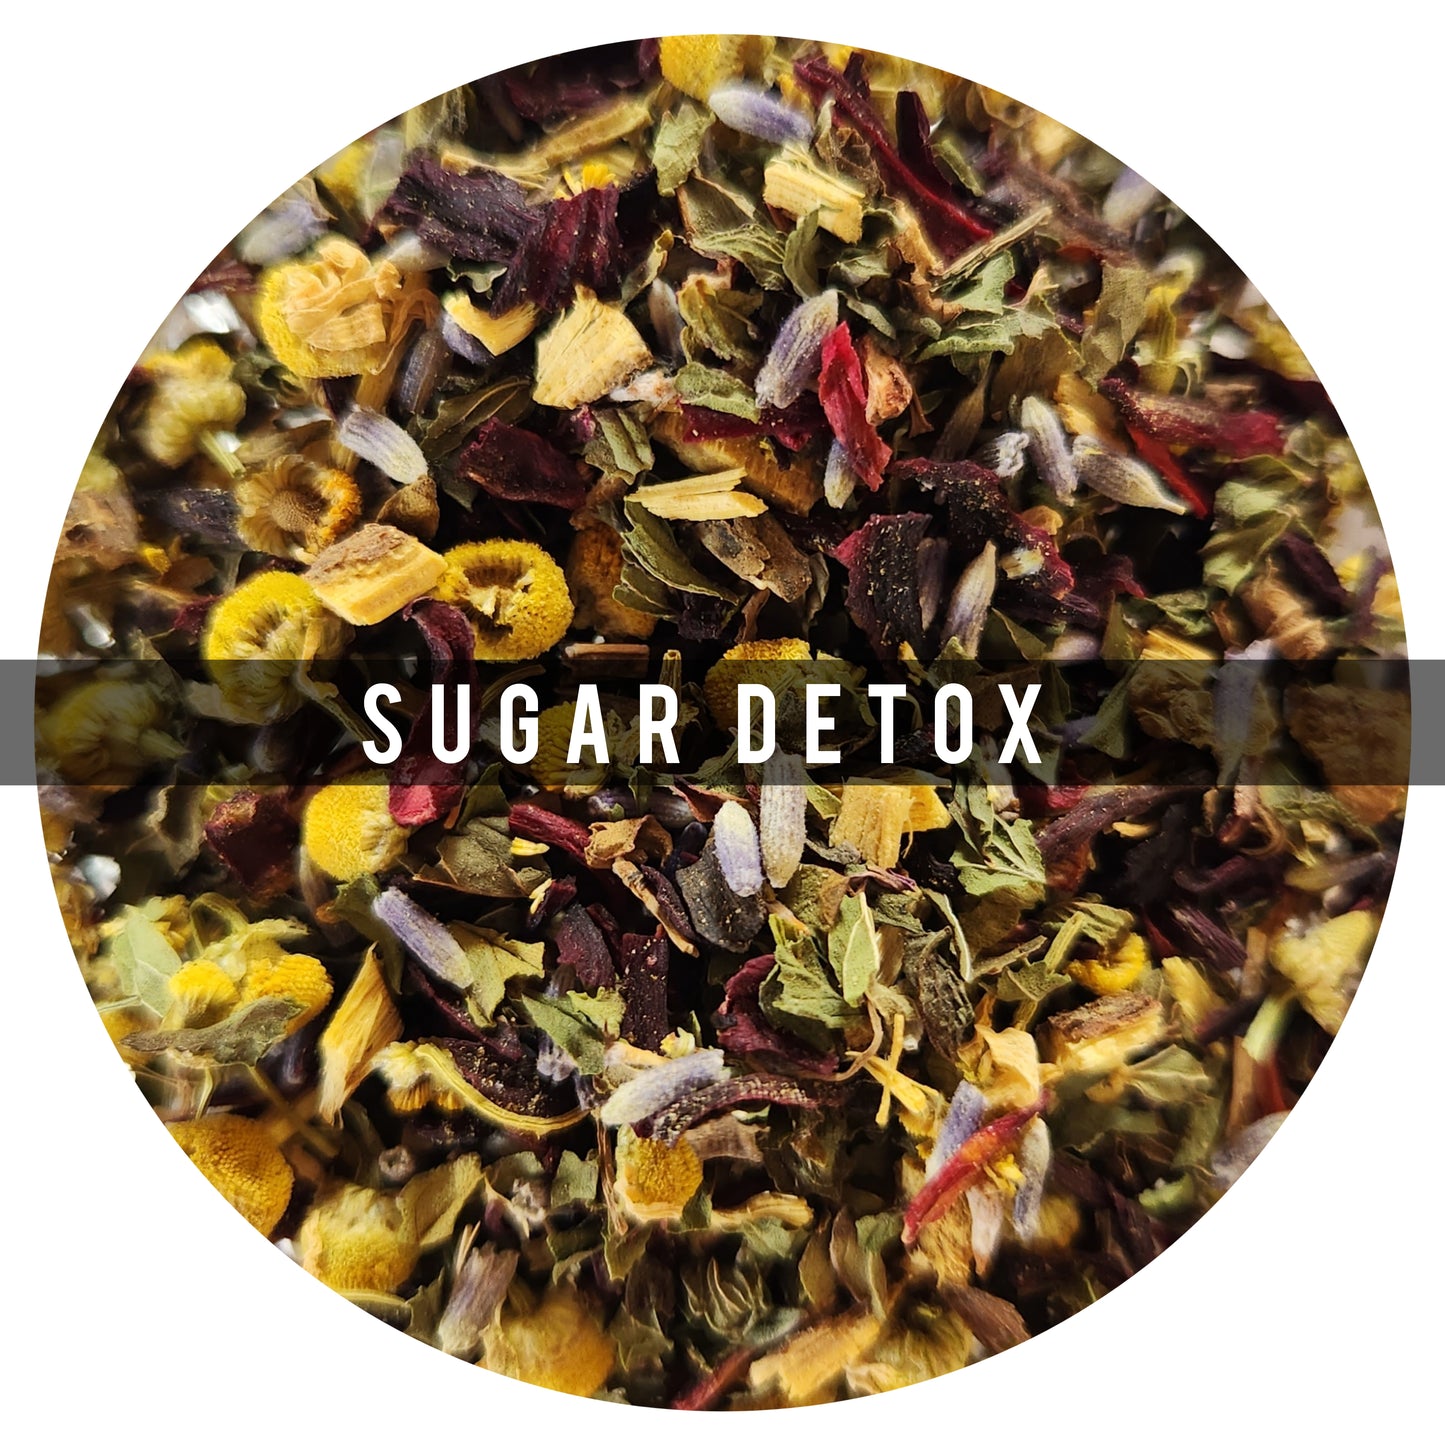 Sugar detox 100g : Dile adiós a los antojos de dulce!
Ingredientes :Jamaica, Menta, Regaliz, Lavanda, Manzanilla